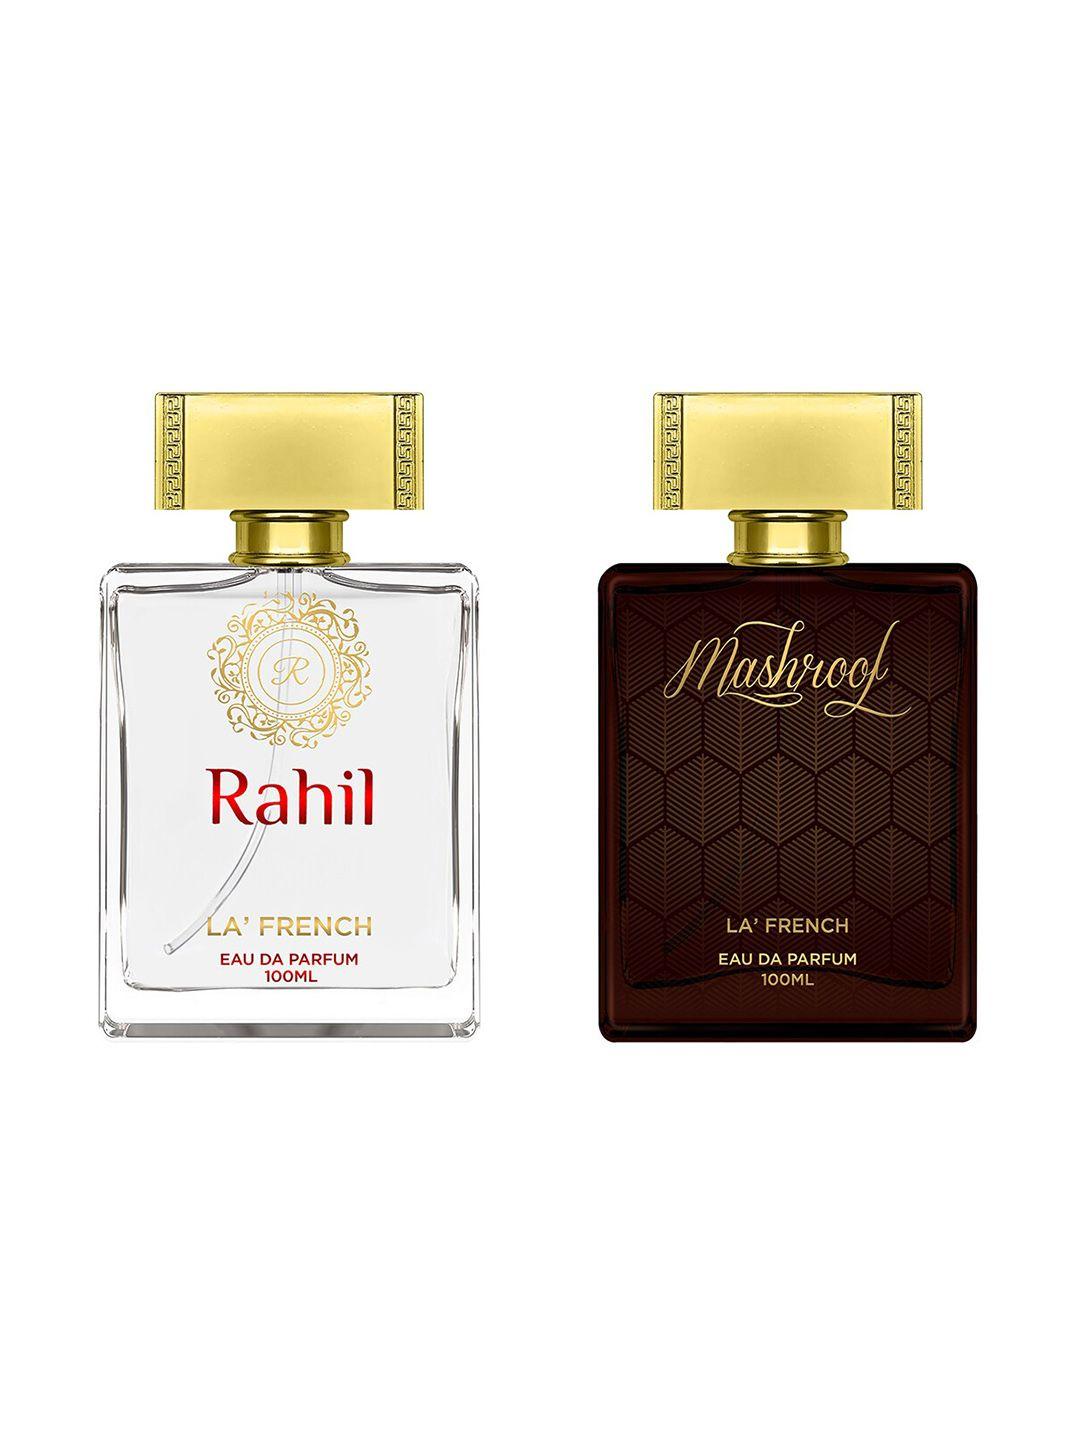 la french set of 2 rahil & mashroof eau de parfum - 100ml each